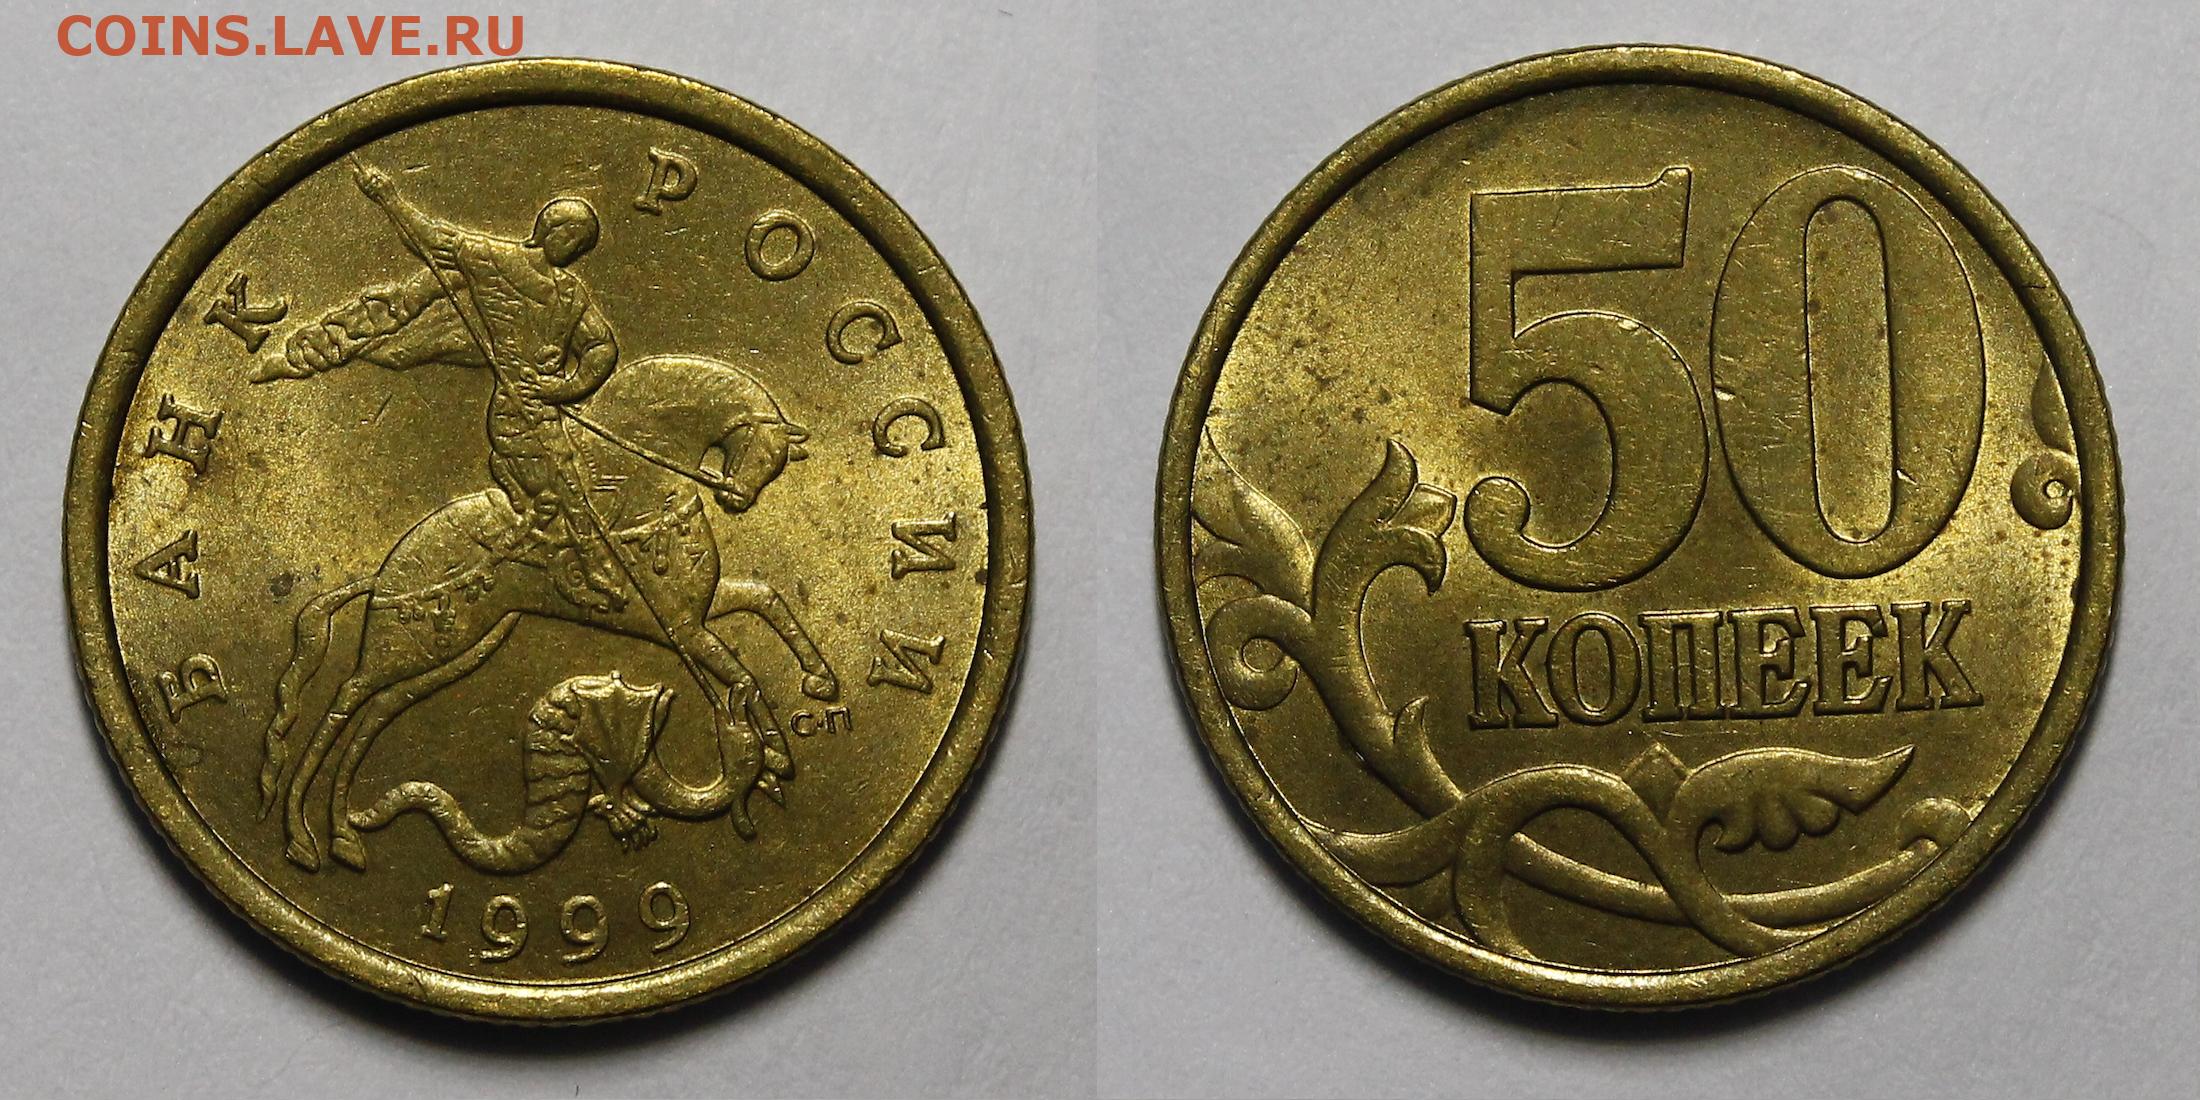 Монеты 2001 года цена стоимость монеты. 10 Копеек 2002 СП. Самые дорогие монеты. Самые редкие монеты 10 копеек. Дорогие 10 копеек России.